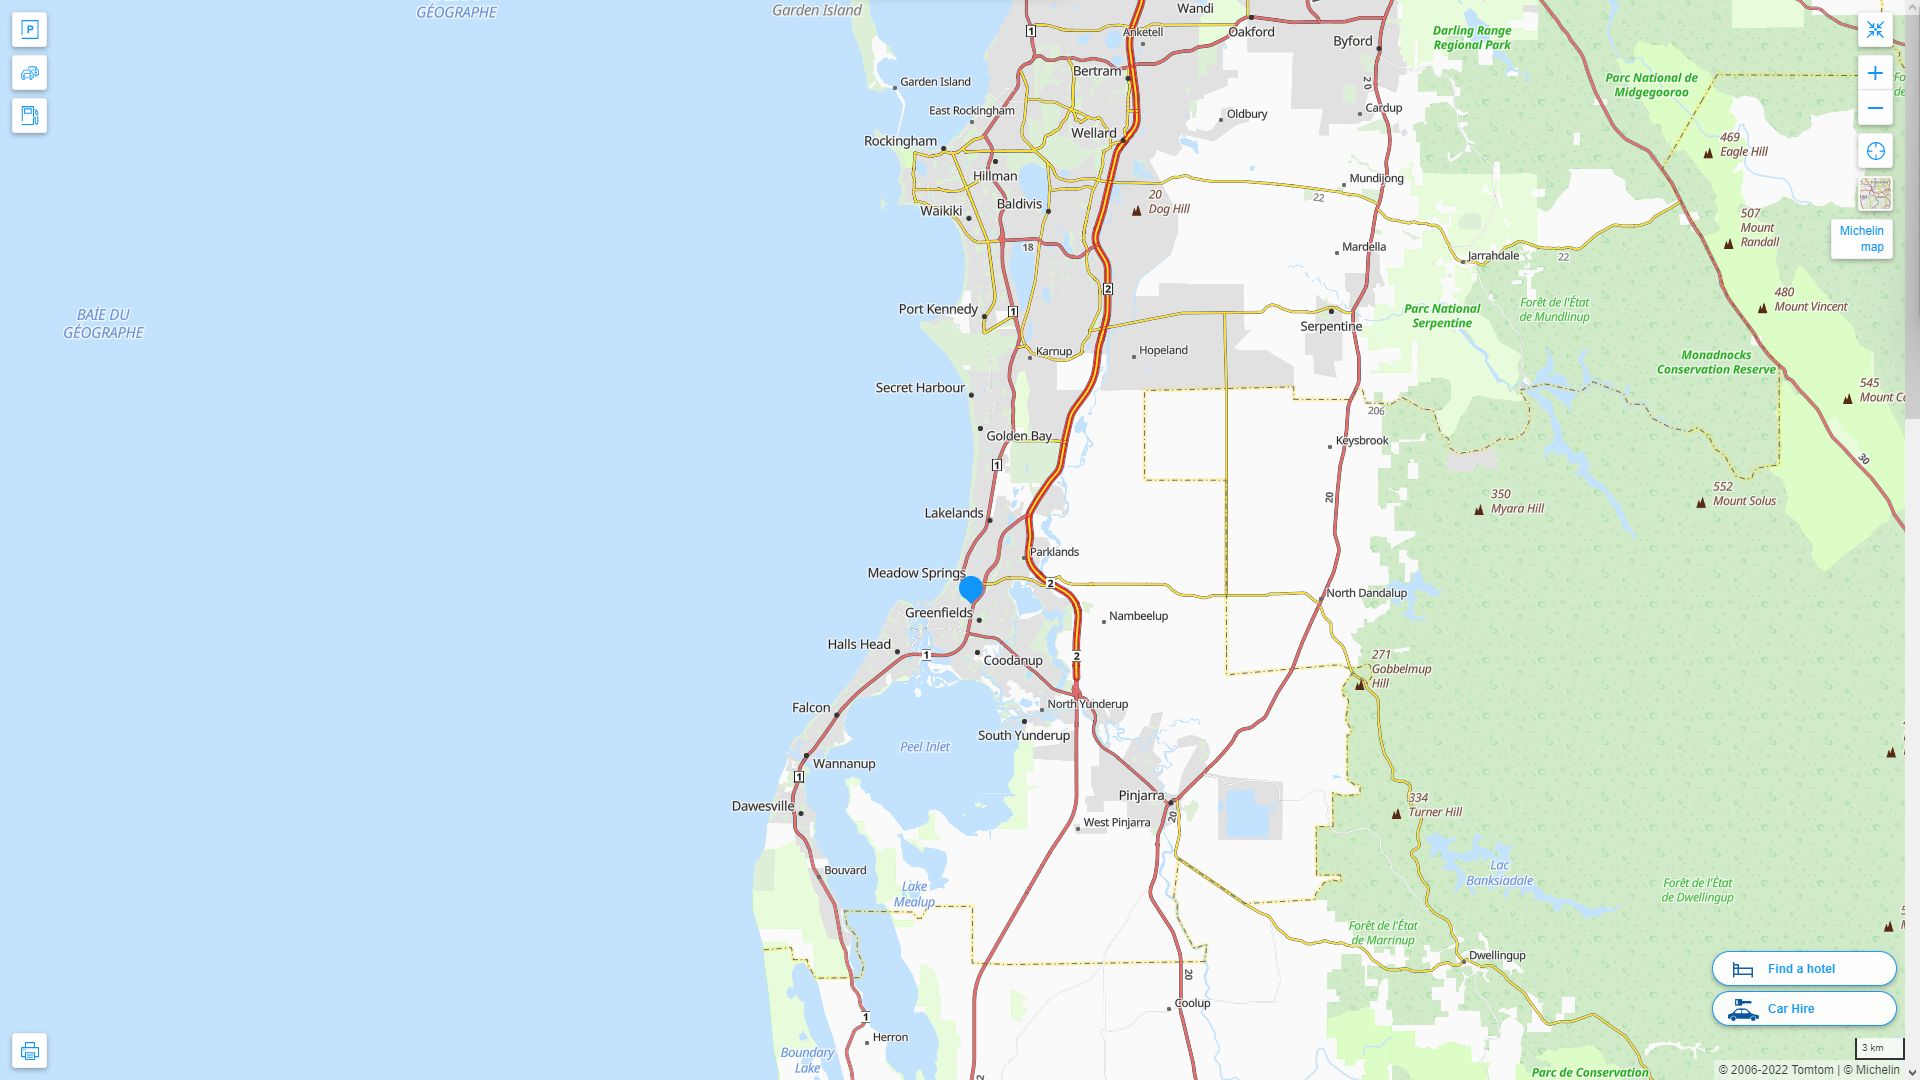 Mandurah Highway and Road Map